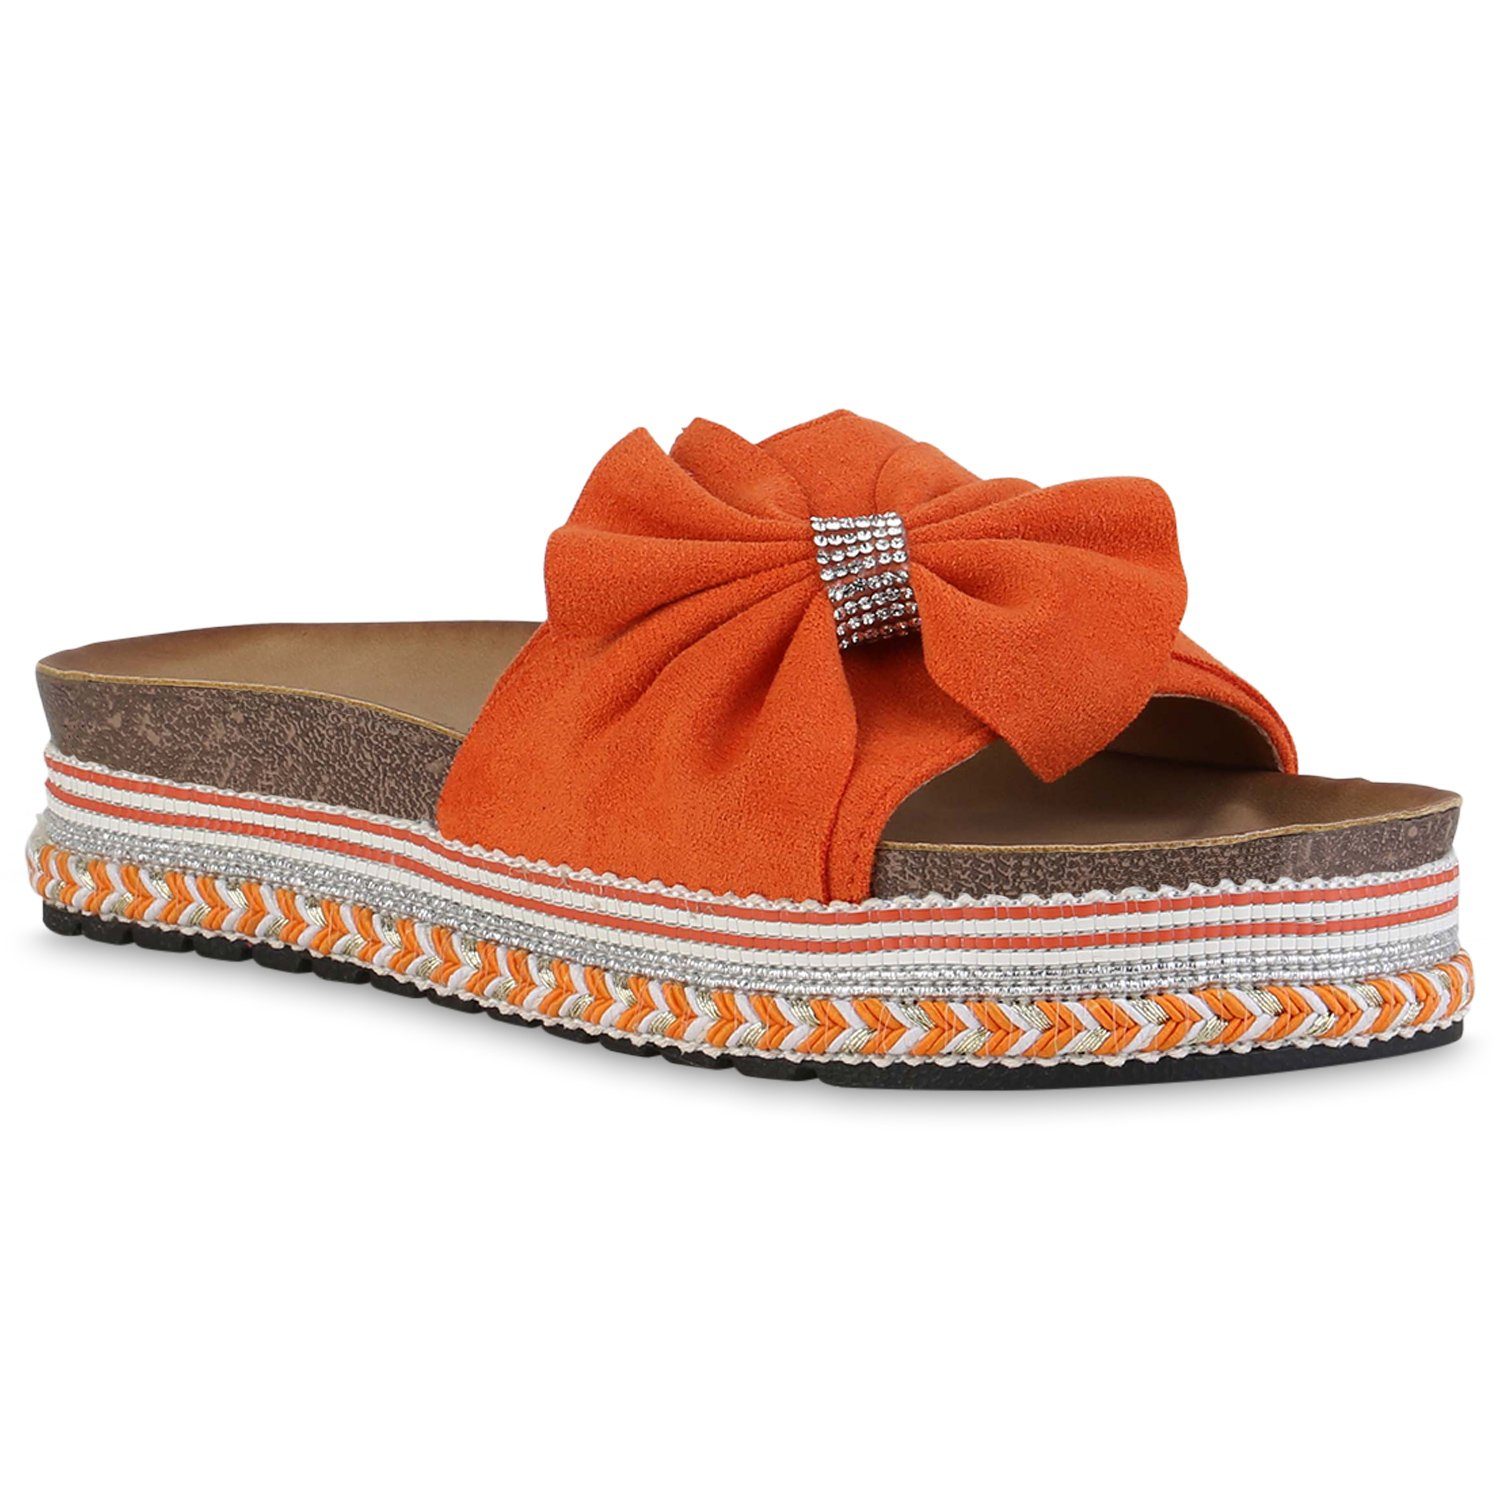 VAN HILL 840278 Sandalette Schuhe Orange